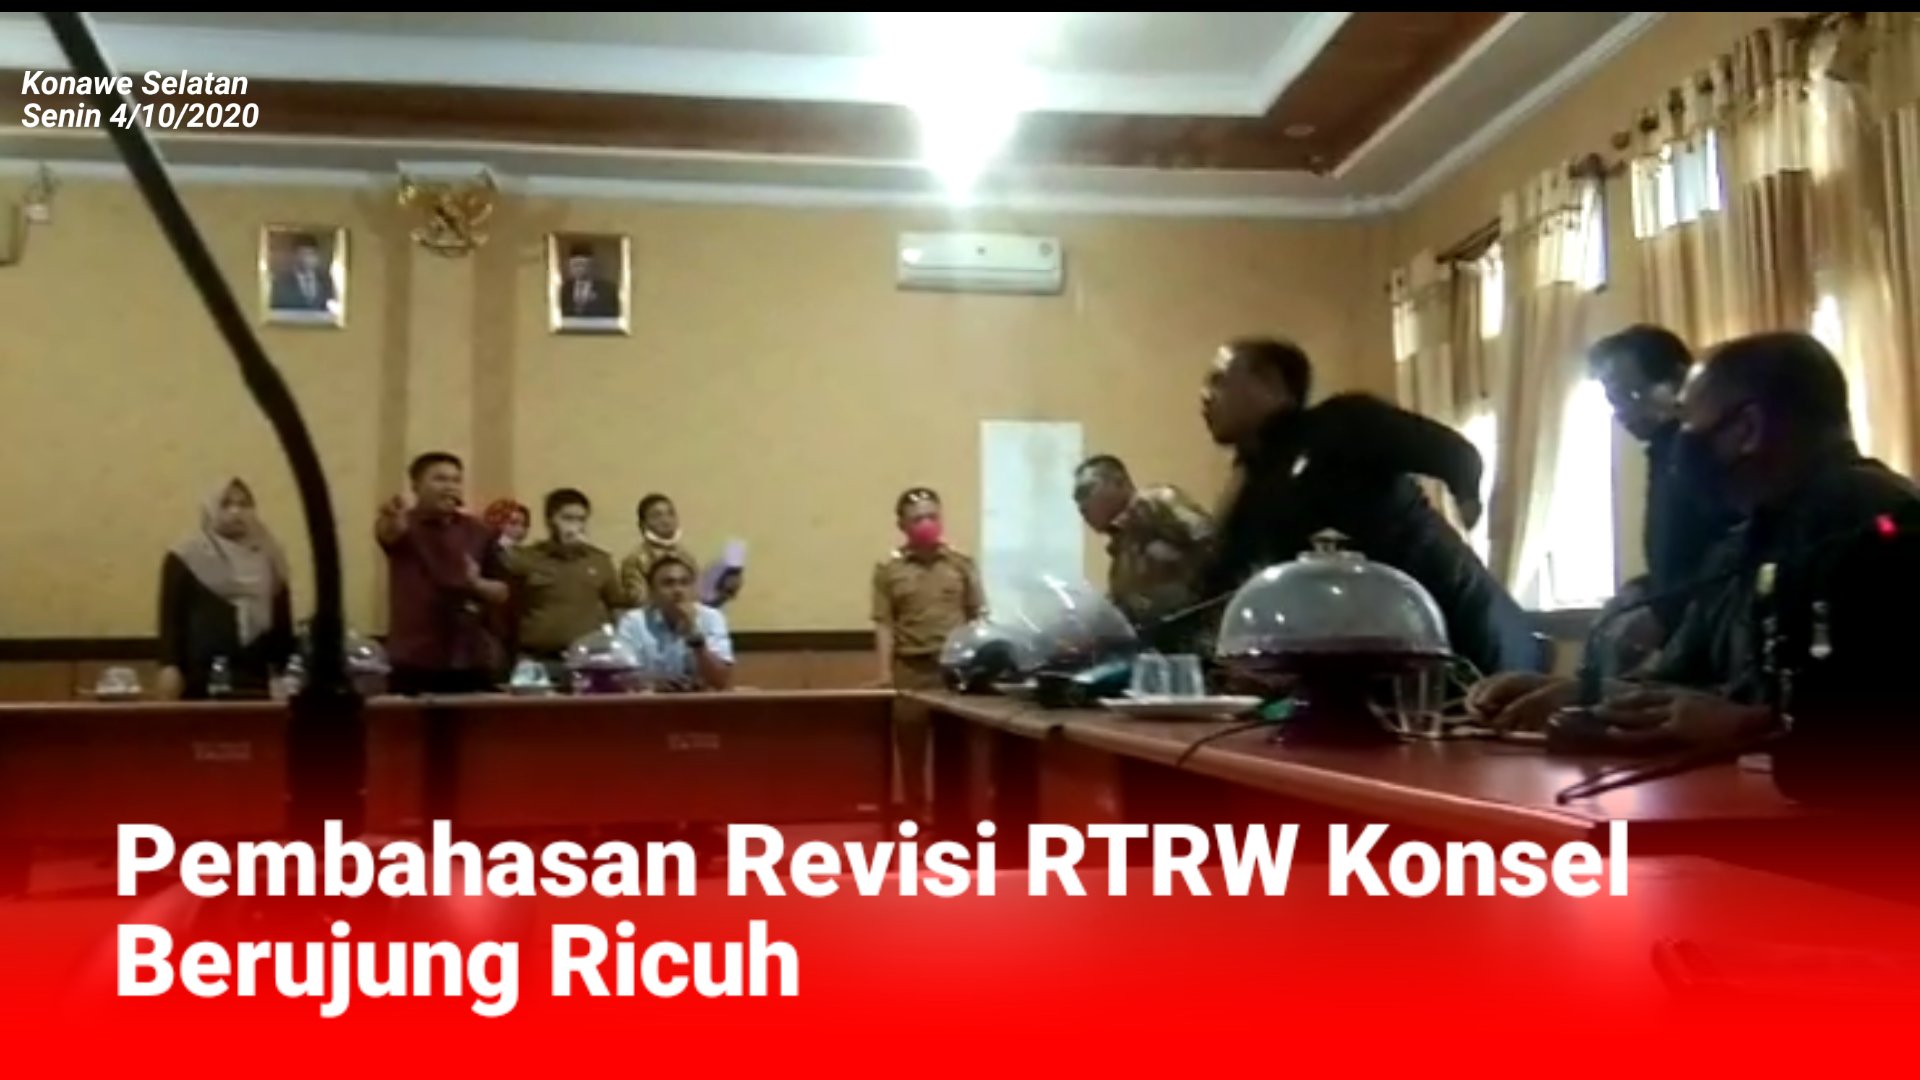 Video: Pembahasan Revisi RTRW Konsel Berujung Ricuh